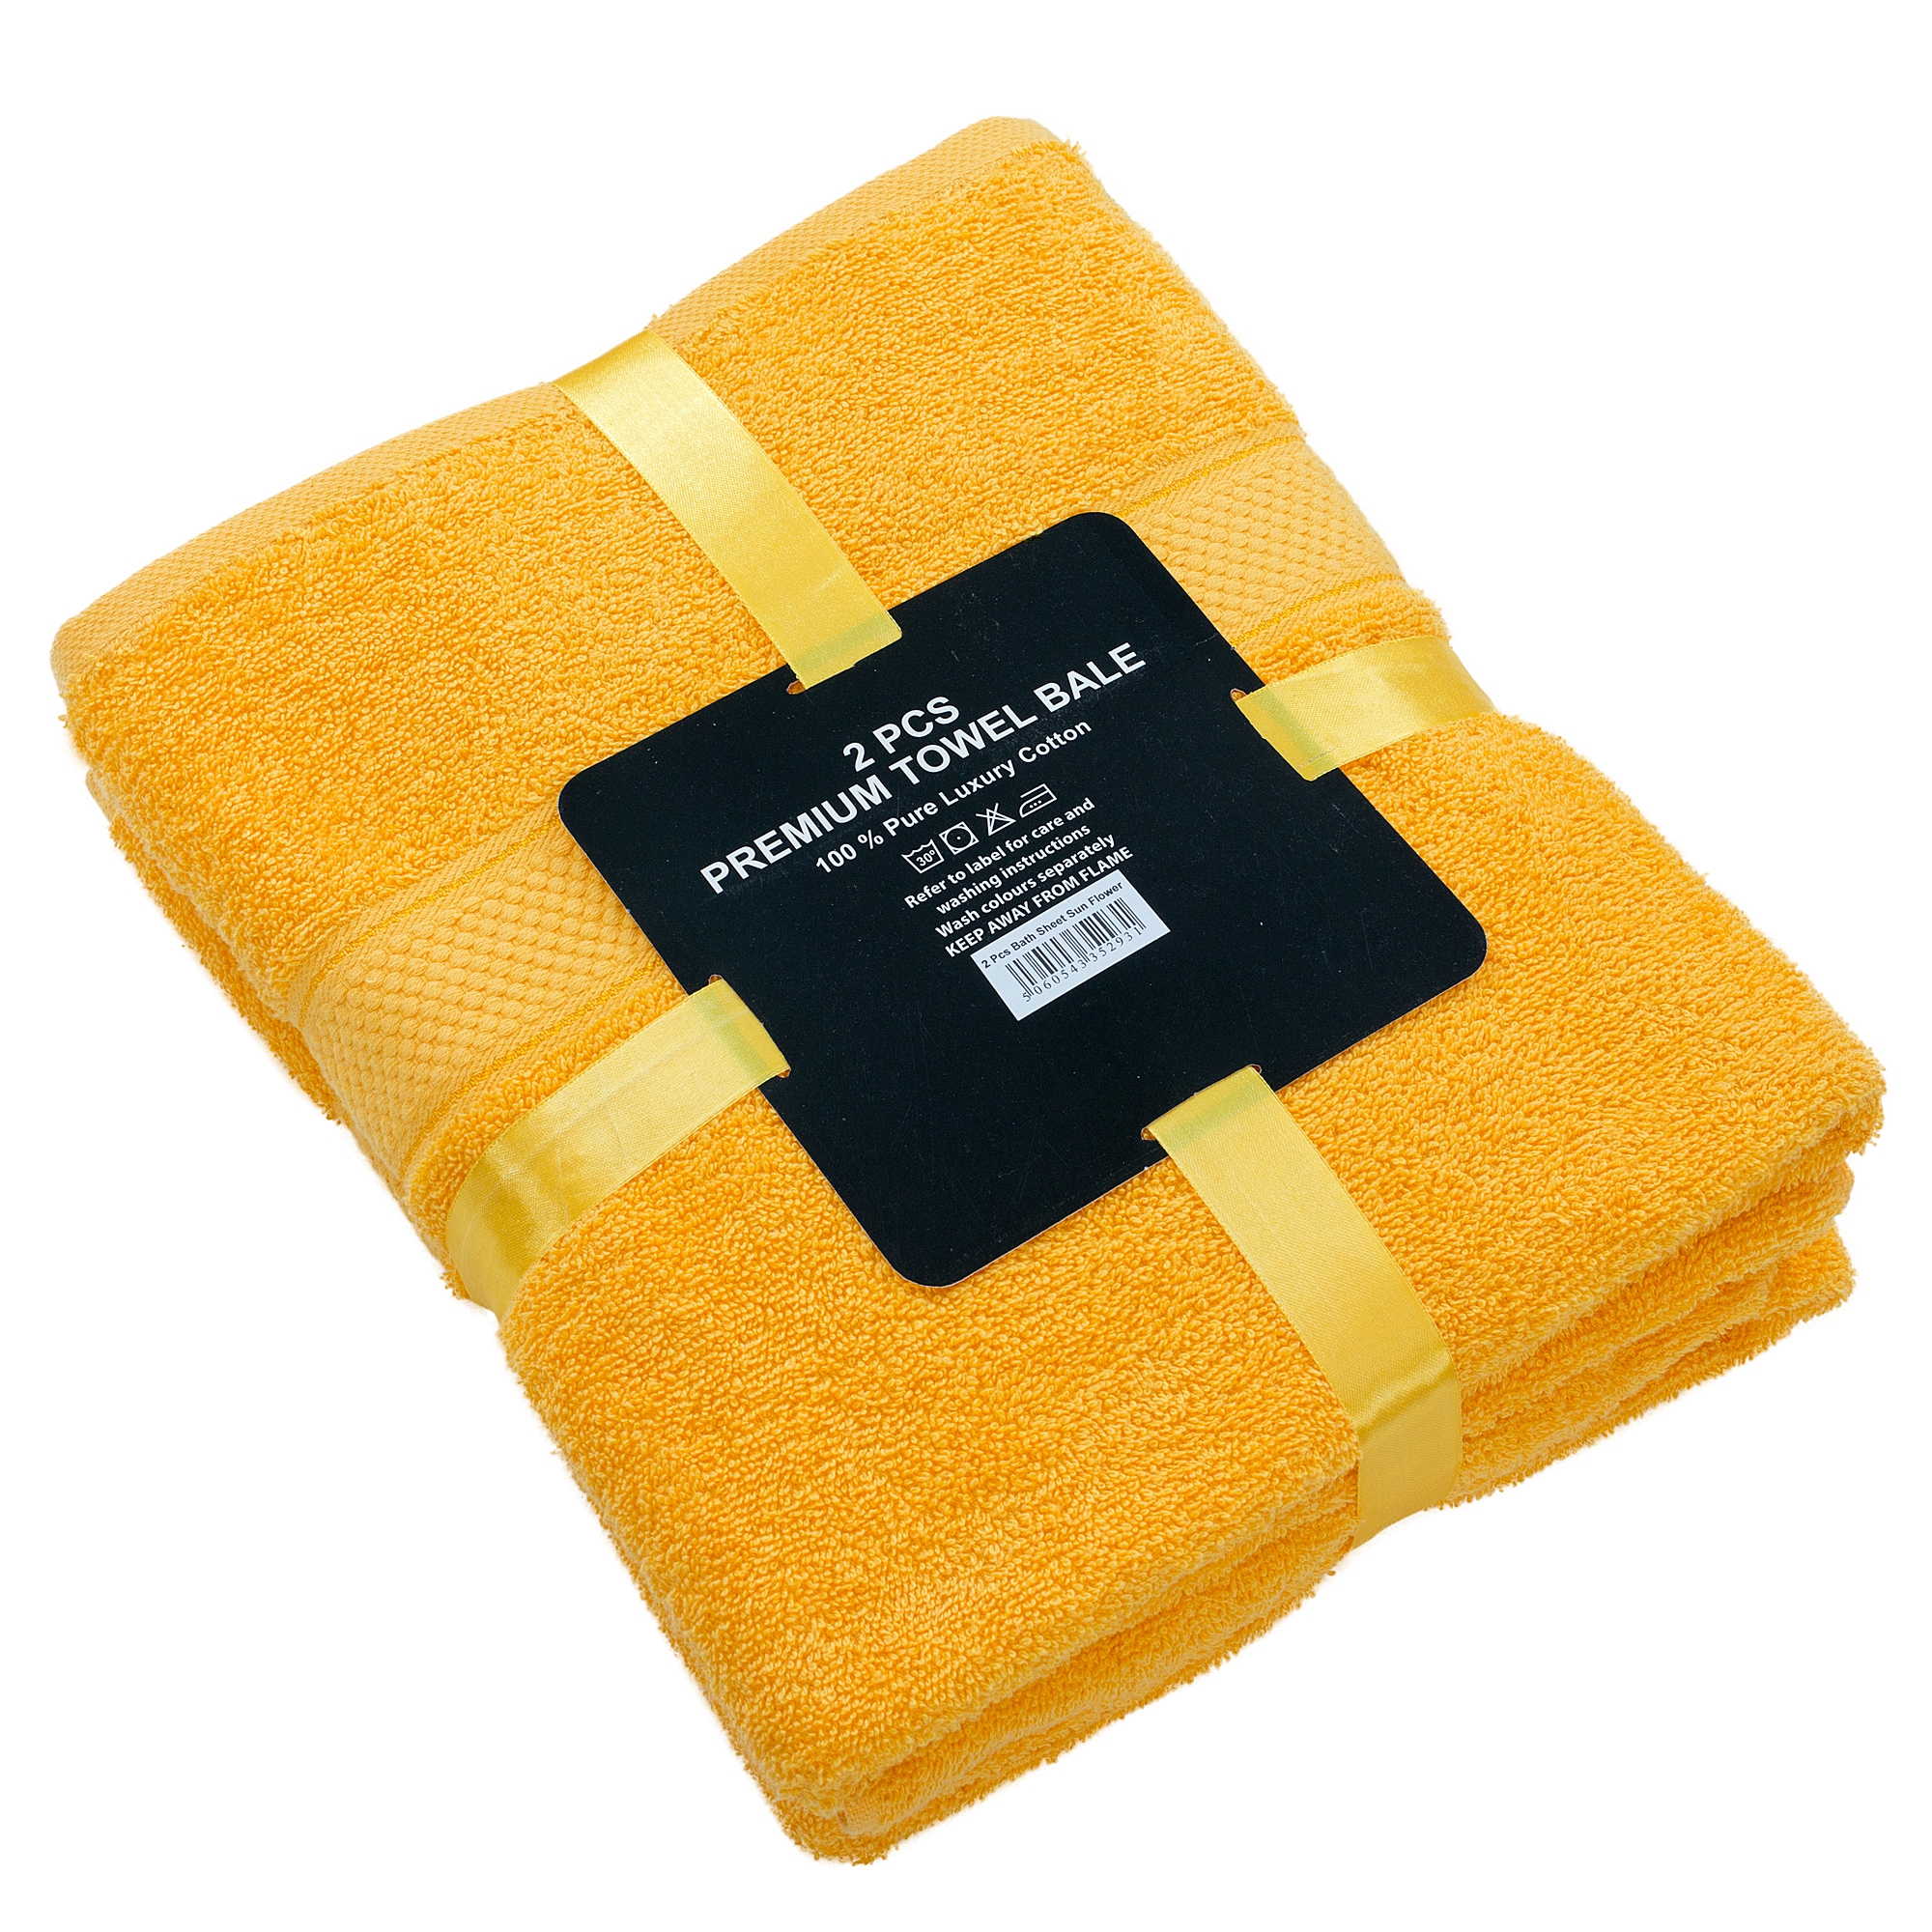 2 Pcs 100 % Cotton Premium Bath Sheet Towel Bale Set Sunflower Plain